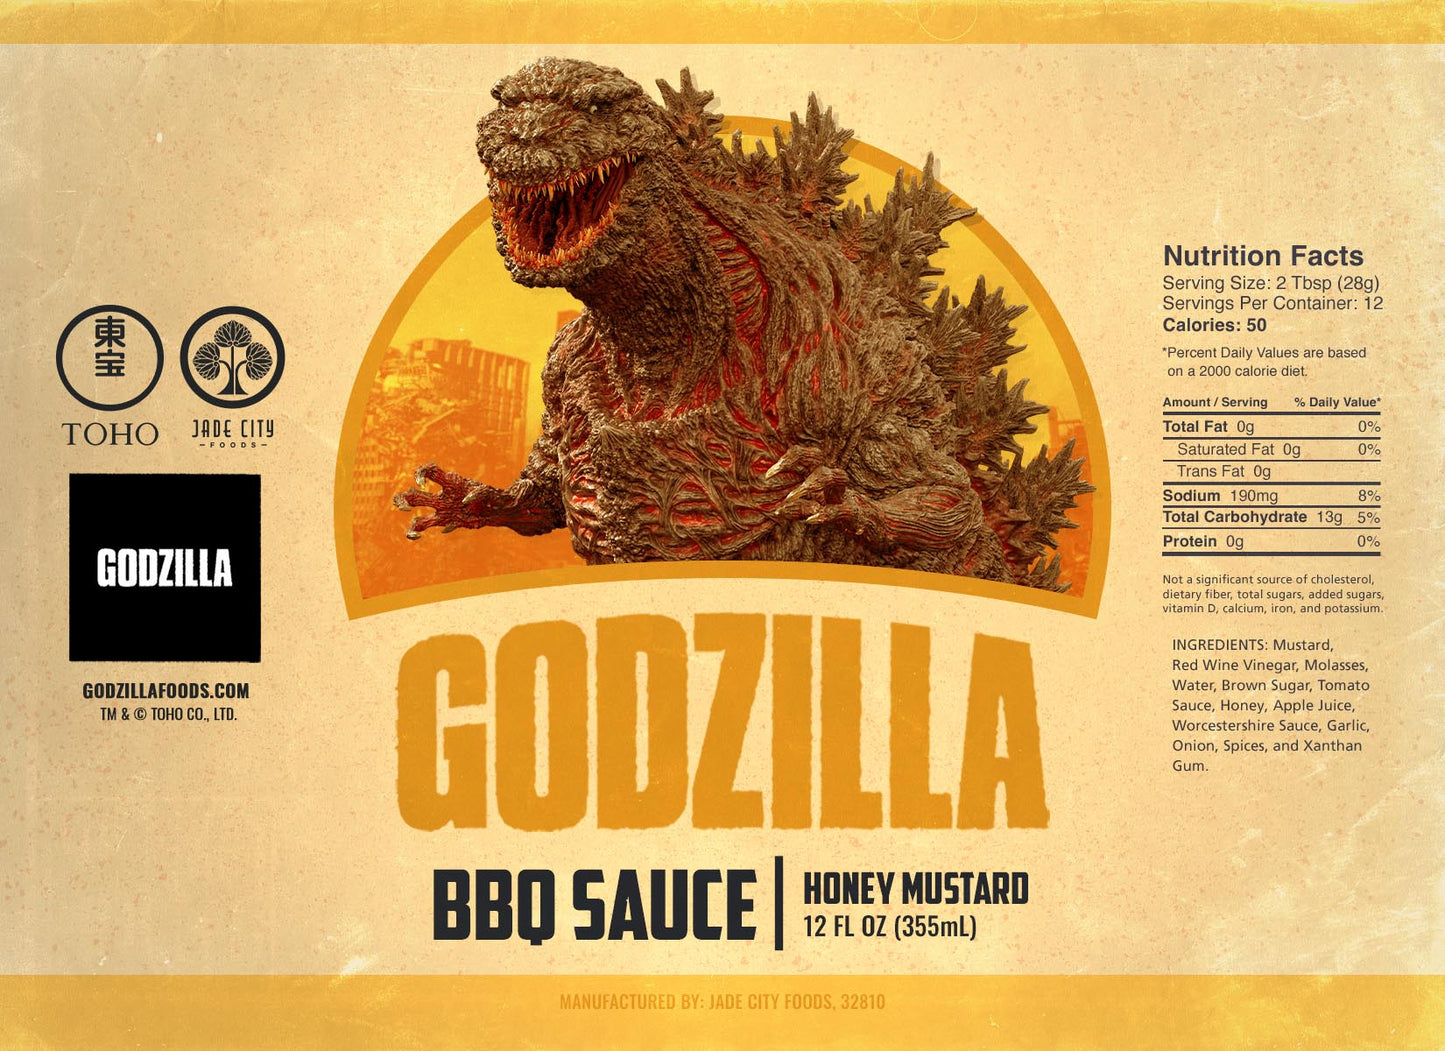 Godzilla's BBQ Sauce 3-Pack